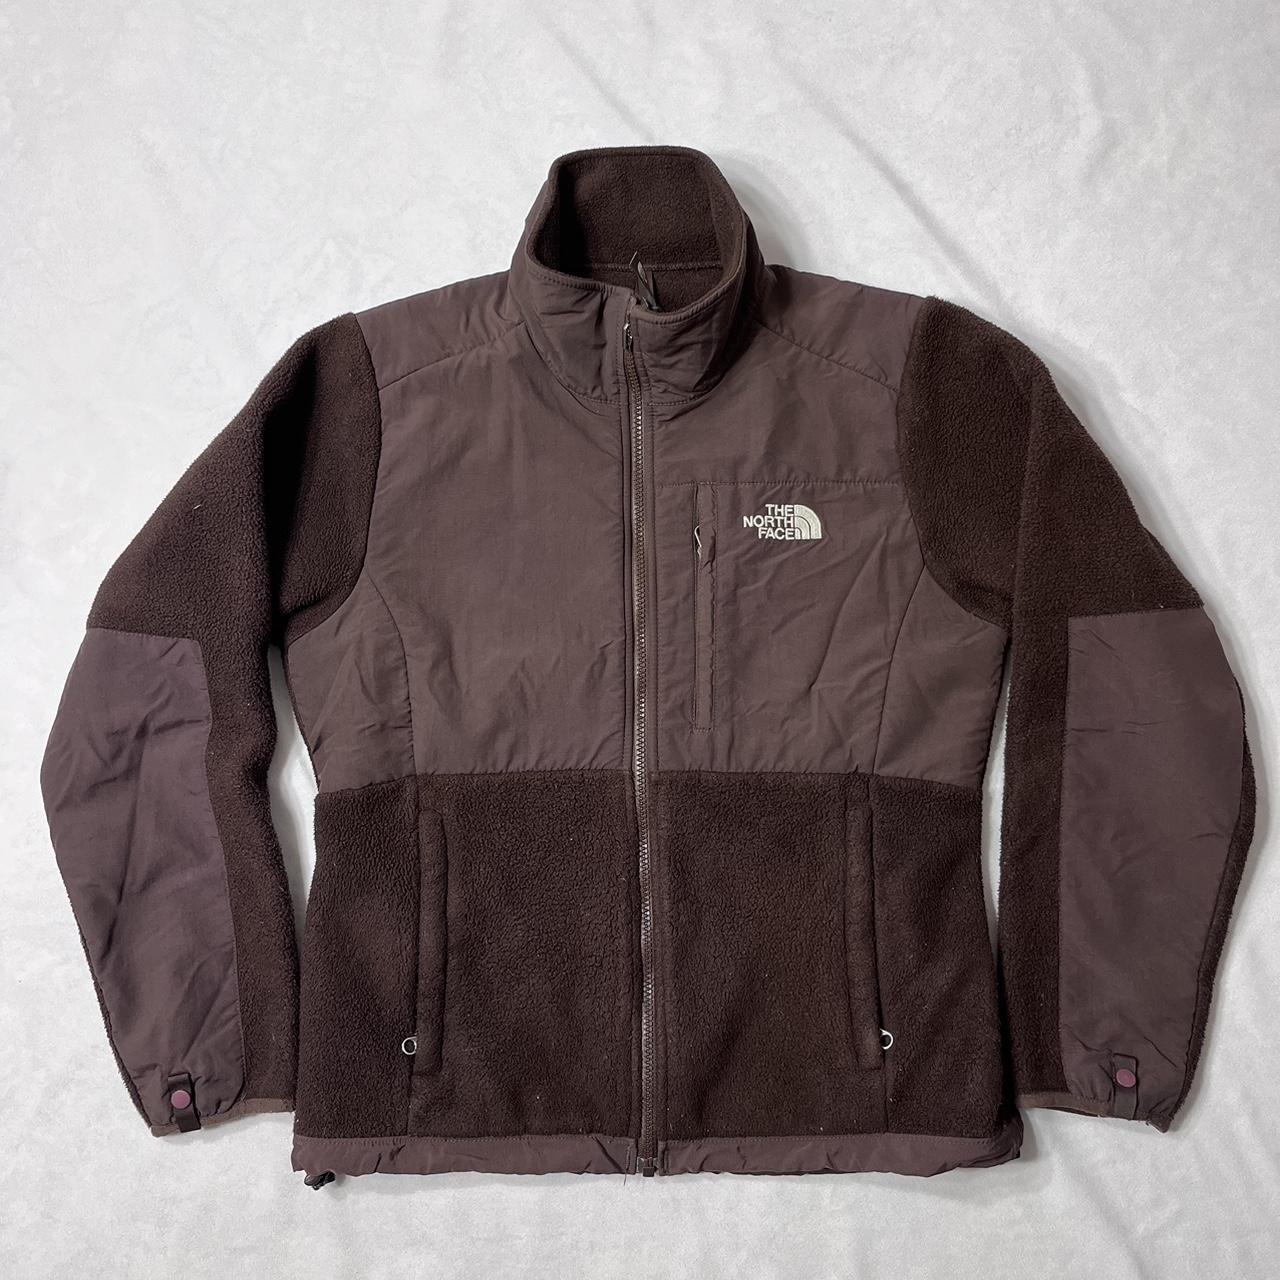 The North Face Brown Fleece Zip Up Jacket - See... - Depop